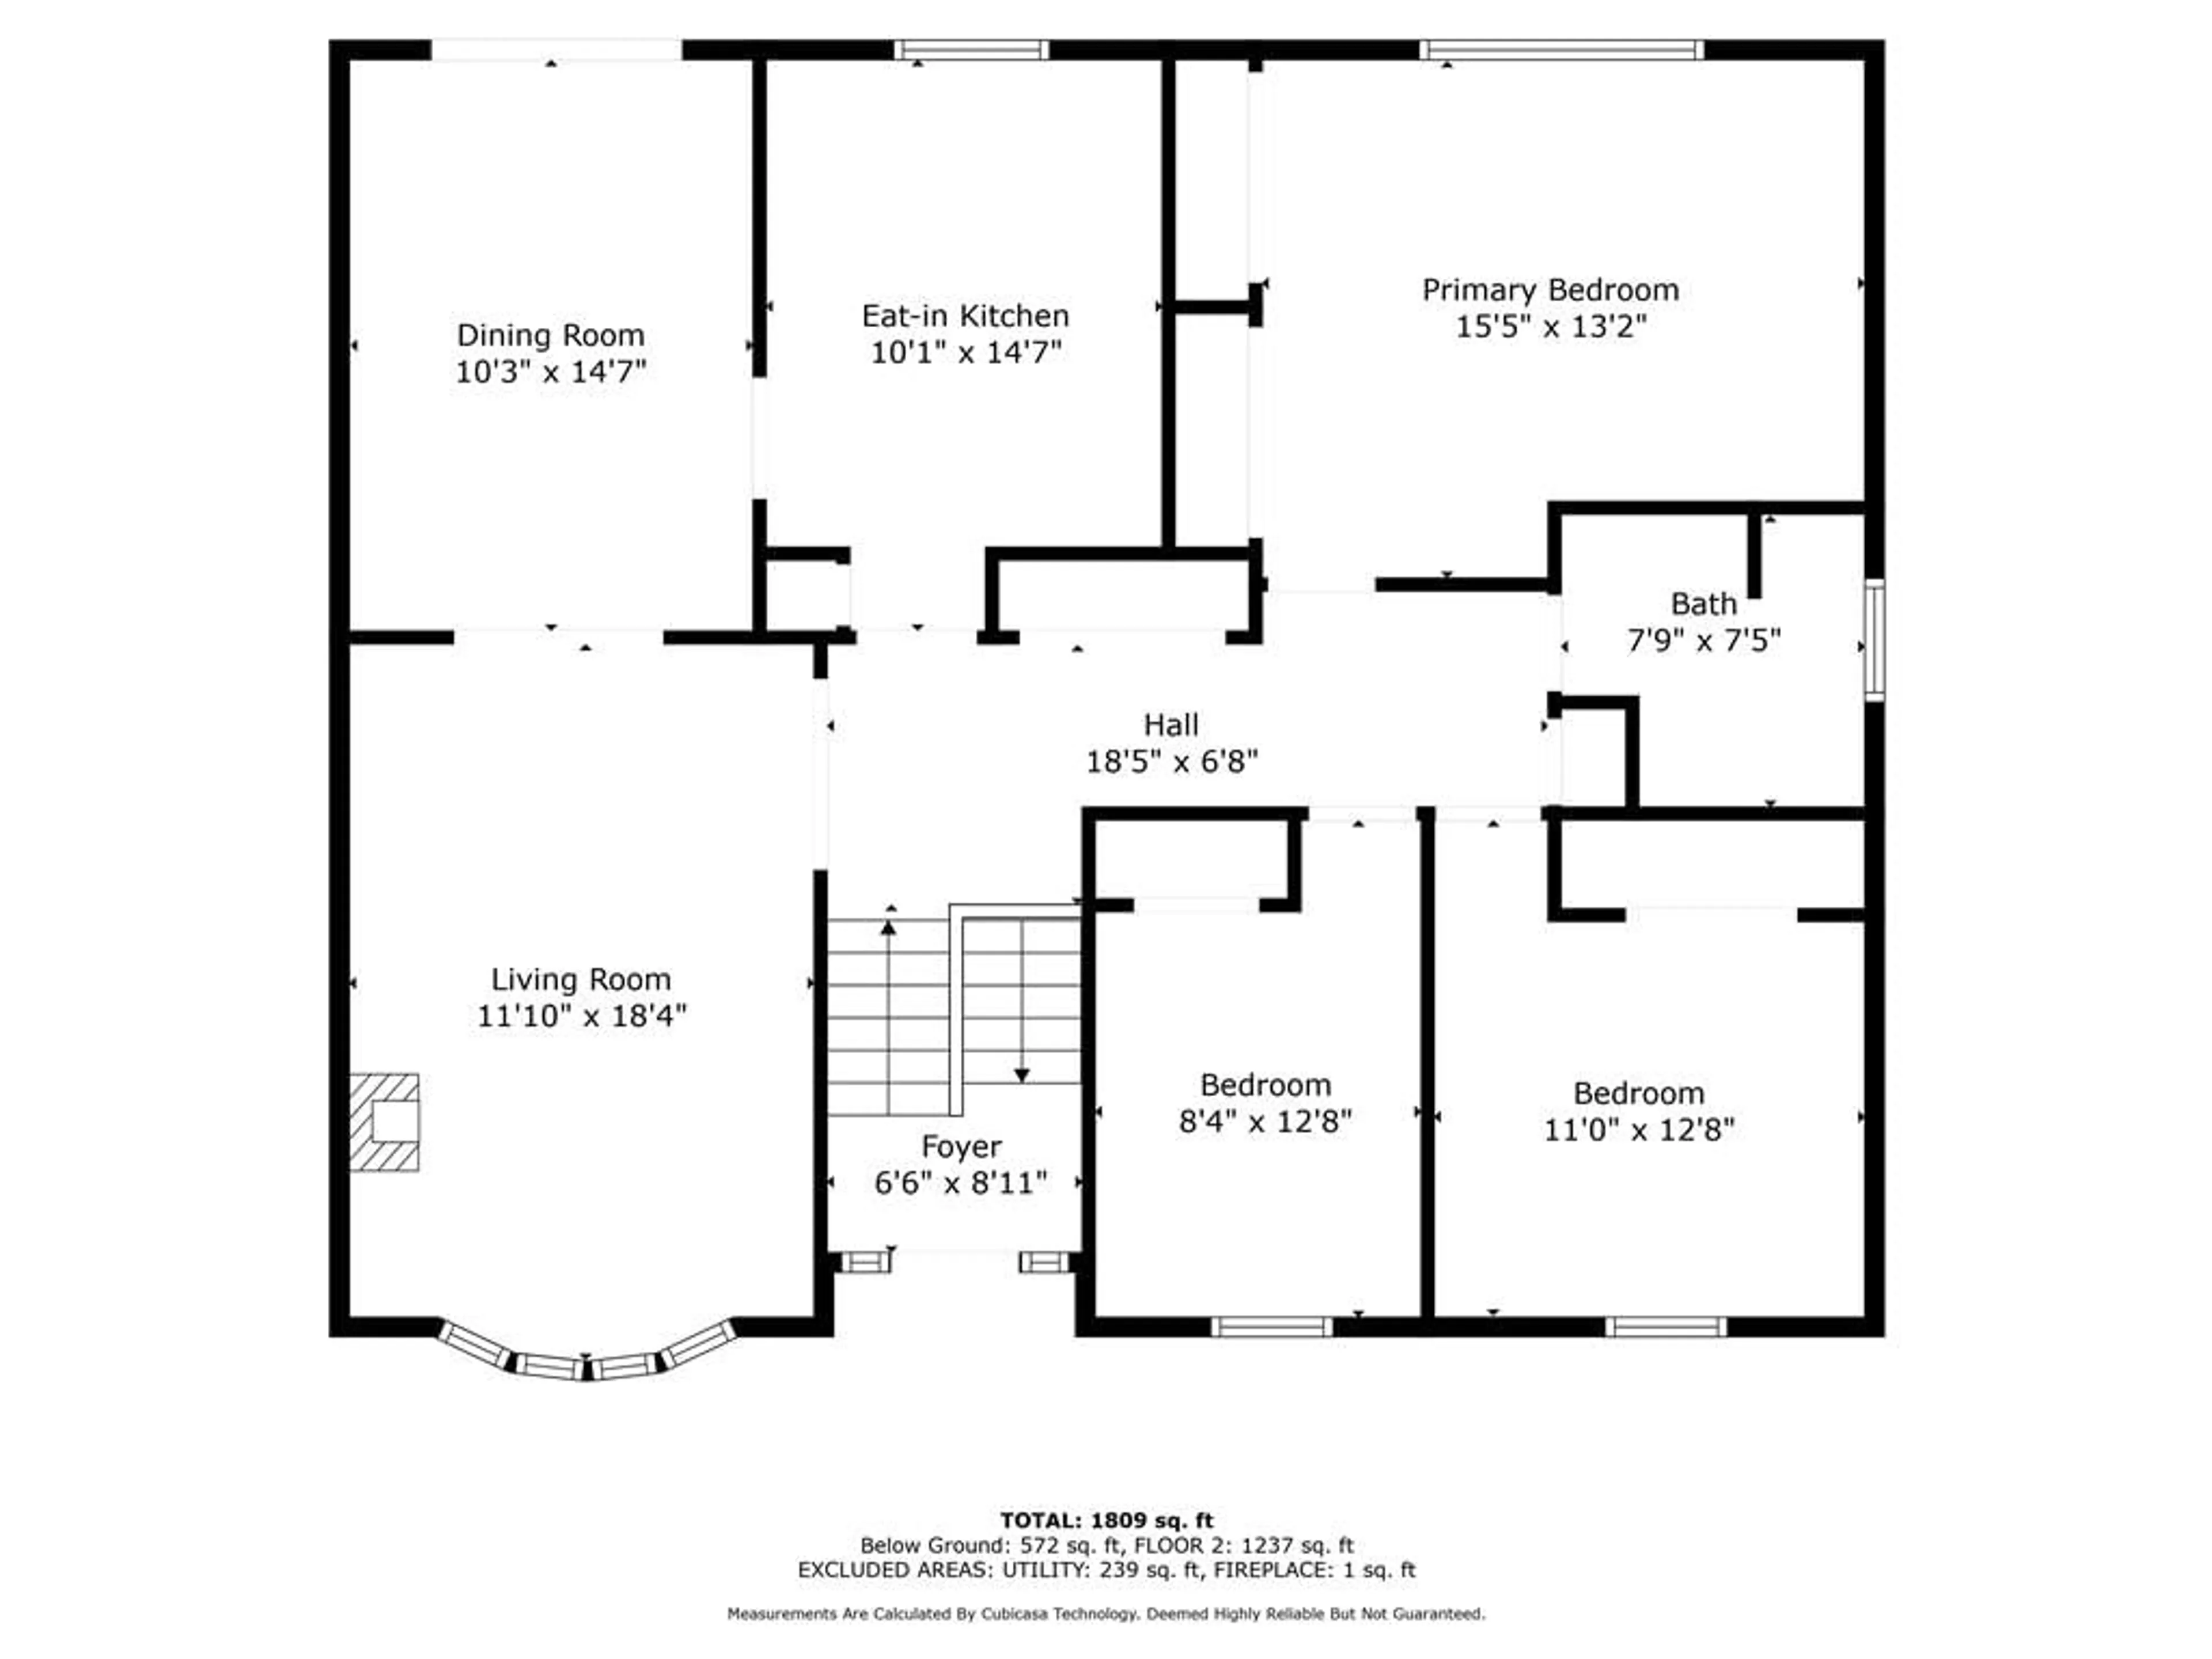 Floor plan for 226 MEMORIAL Dr, Brantford Ontario N3R 5T1